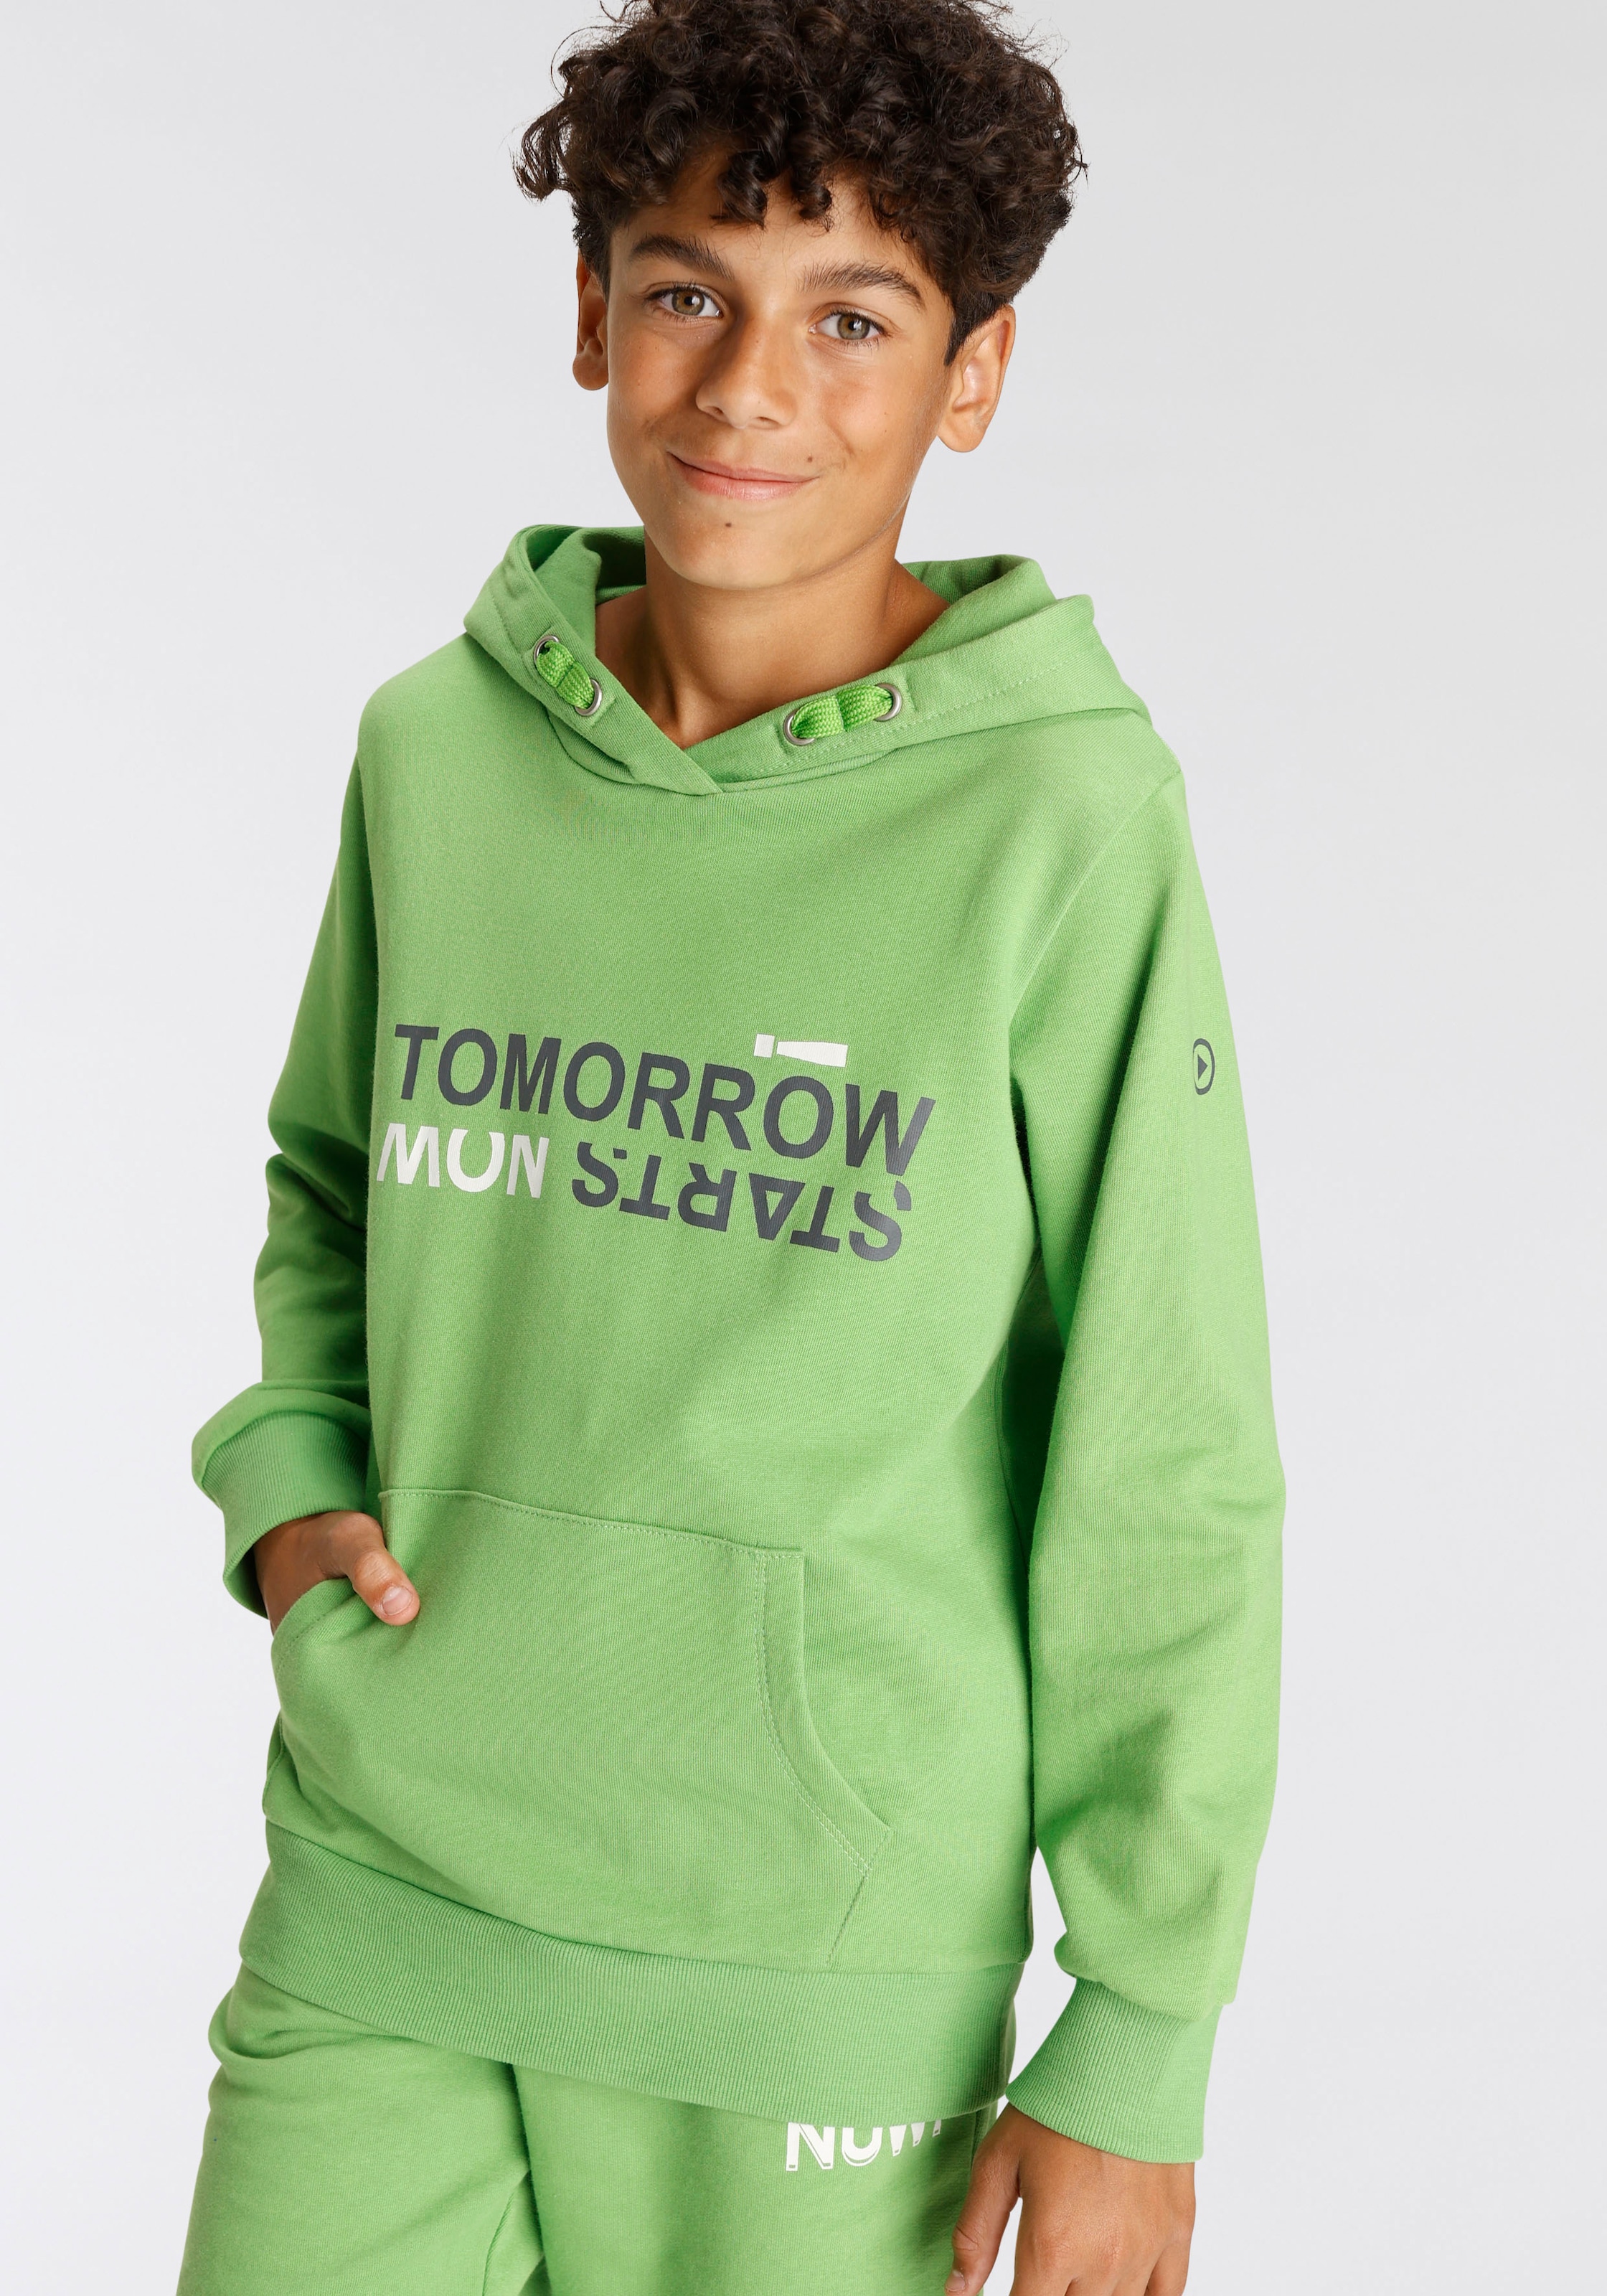 Spruch NOW!«, KIDSWORLD »TOMORROW online kaufen STARTS Kapuzensweatshirt